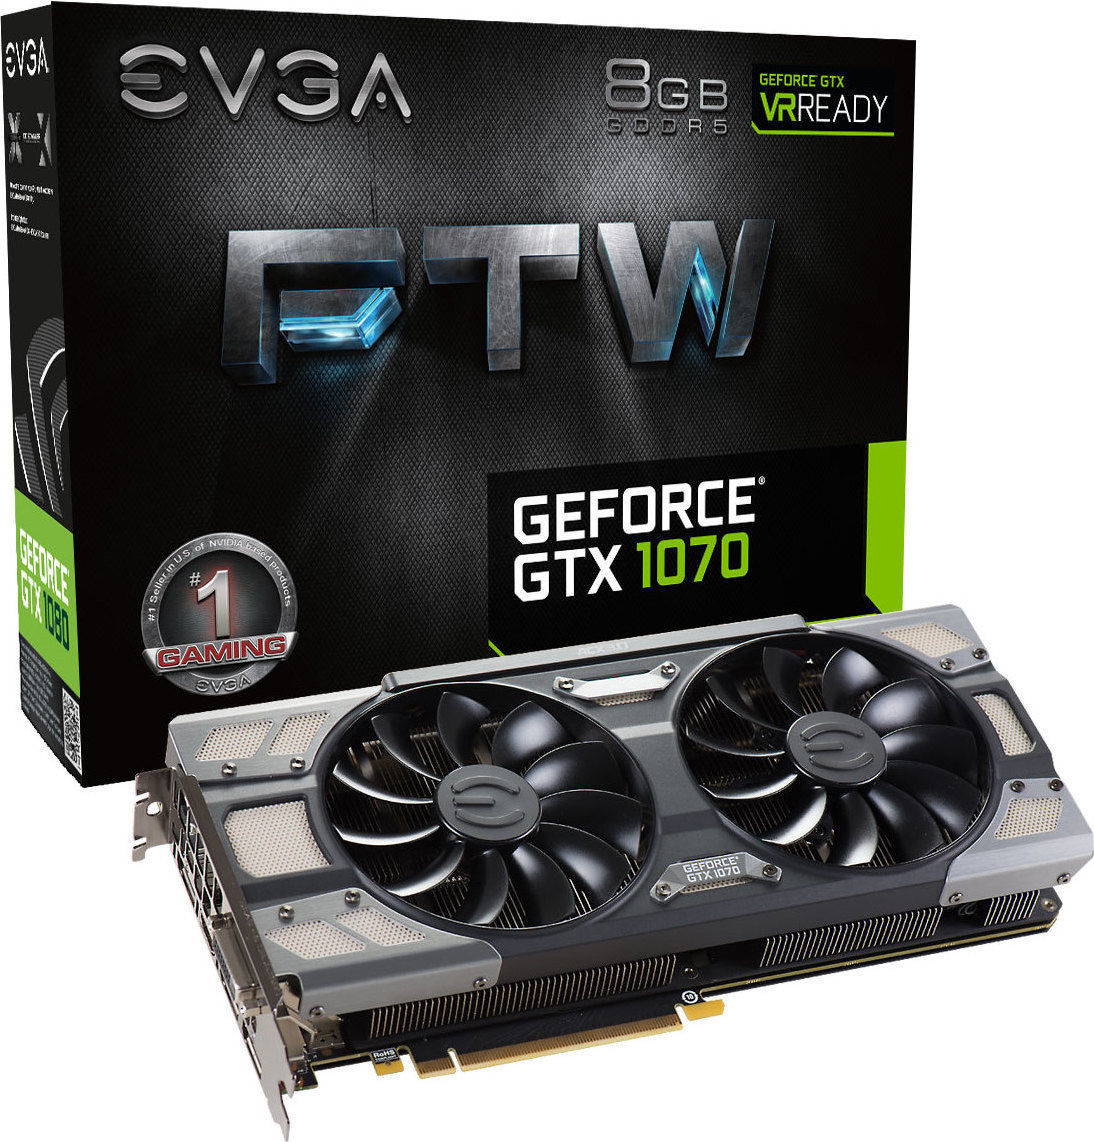 EVGA GeForce GTX1070 8GB FTW Gaming ACX 3.0 (08G-P4-6276-KR) - Skroutz.gr